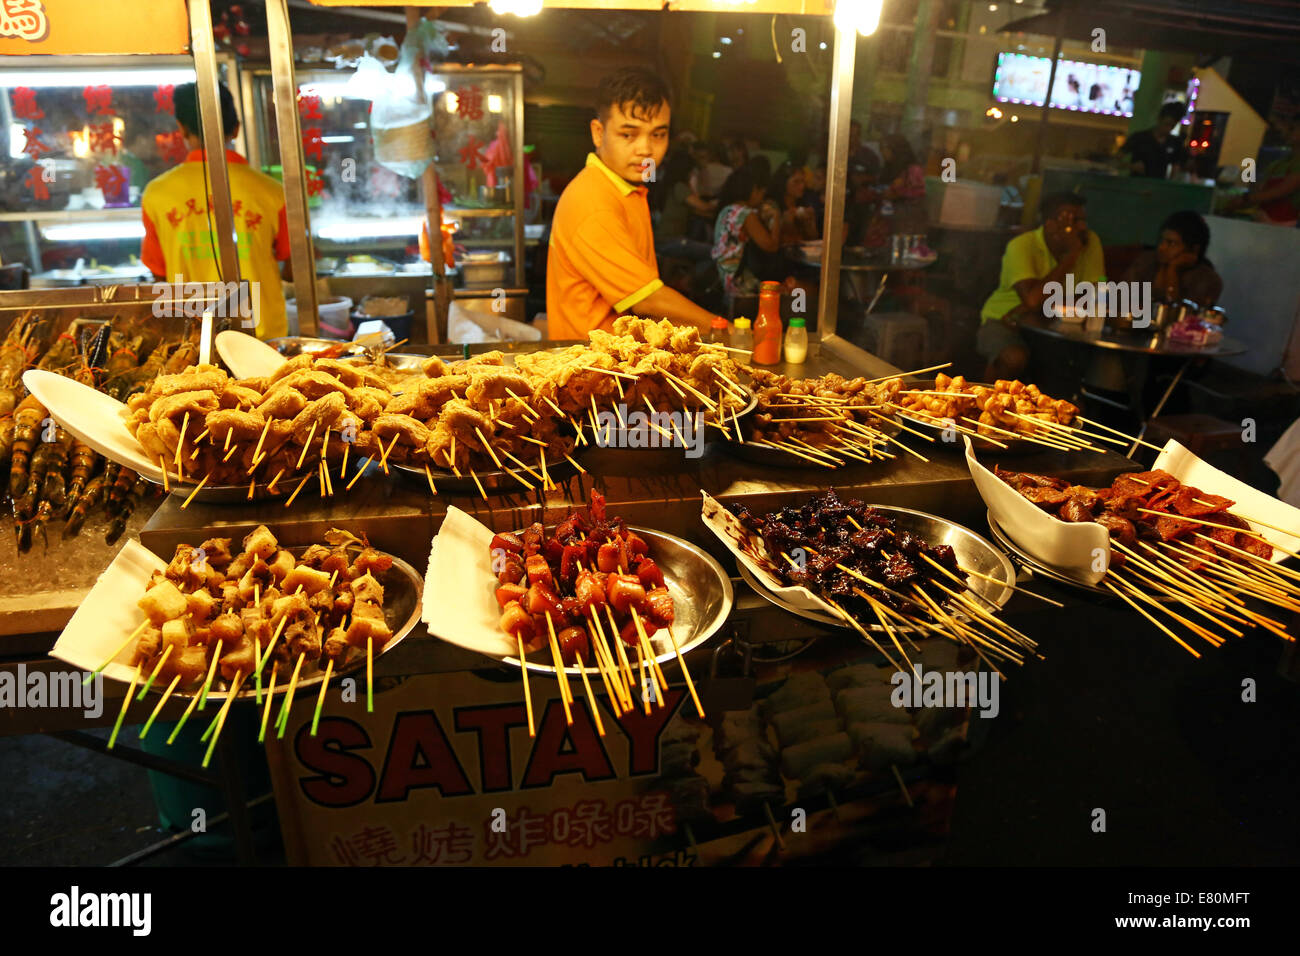 Satay stall with street food in Jalan Alor in Bukit Bintang in Kuala Lumpur, Malaysia Stock Photo